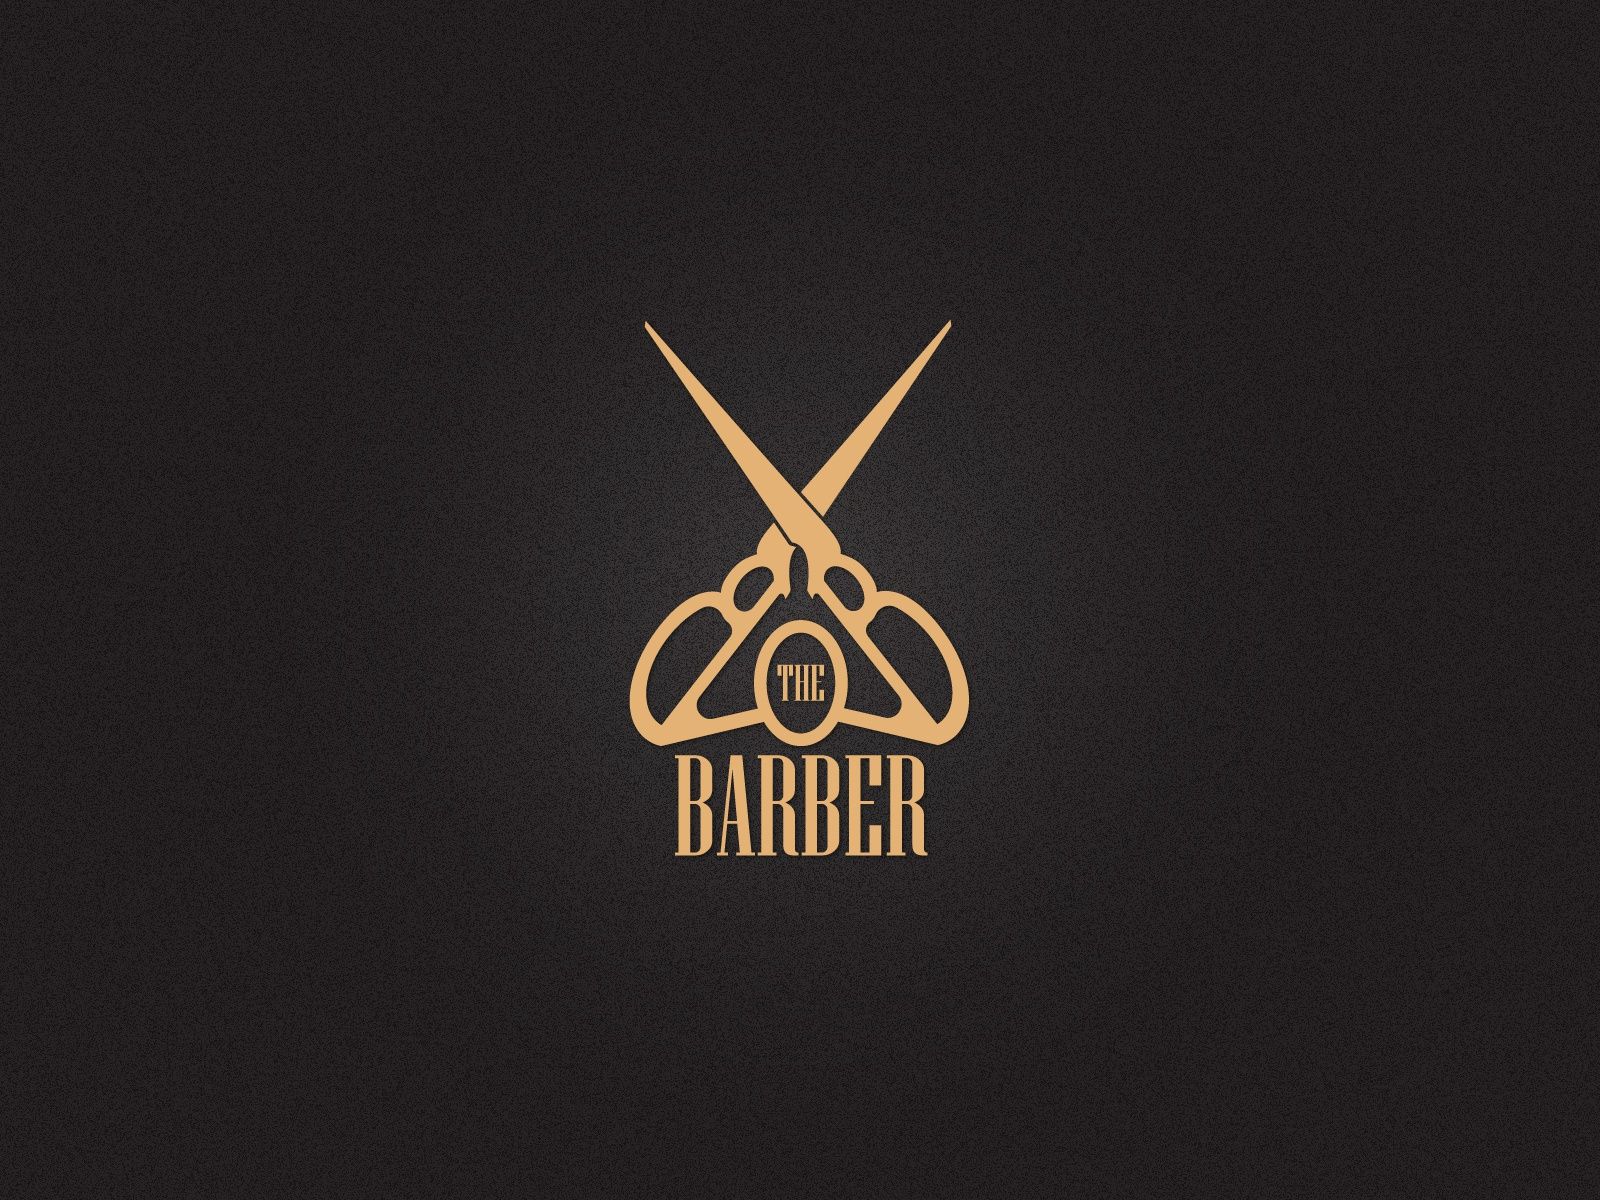 BARBER SHOP LOGO 13 50. Shop Logo, Barber Shop, Barber